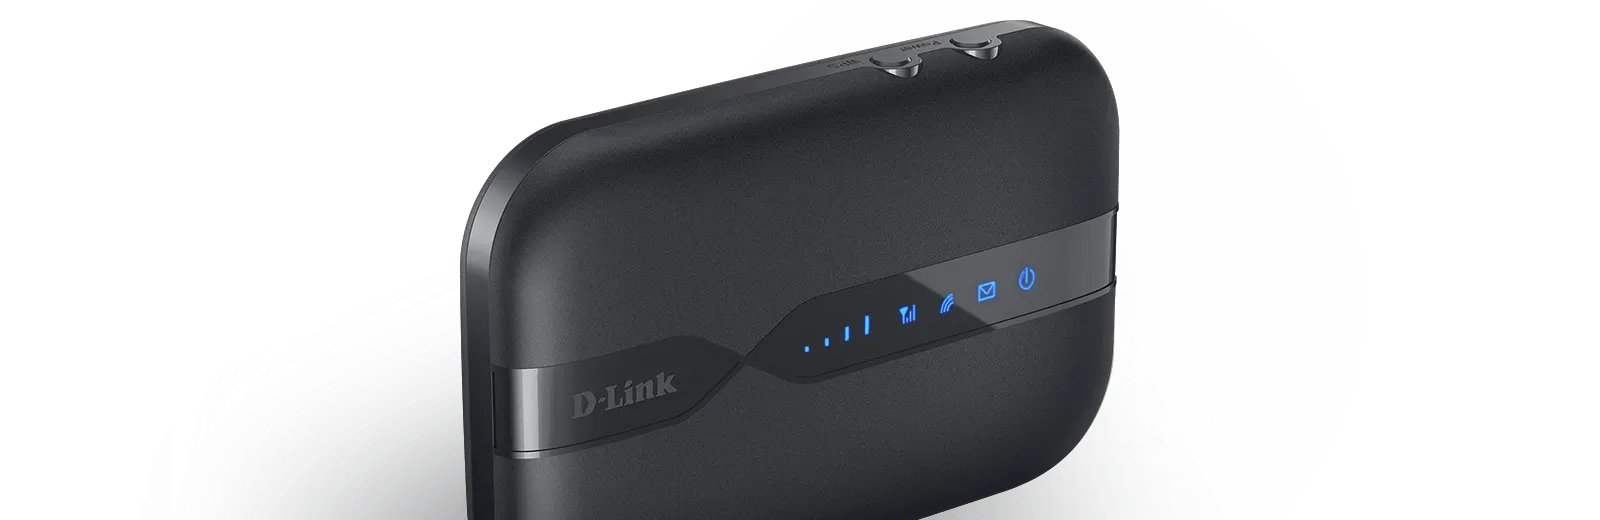 مودم جیبی سیم کارت خور دی لینک D-Link DWR-932C 4G LTE Mobile WiFi Hotspot 150 Mbps